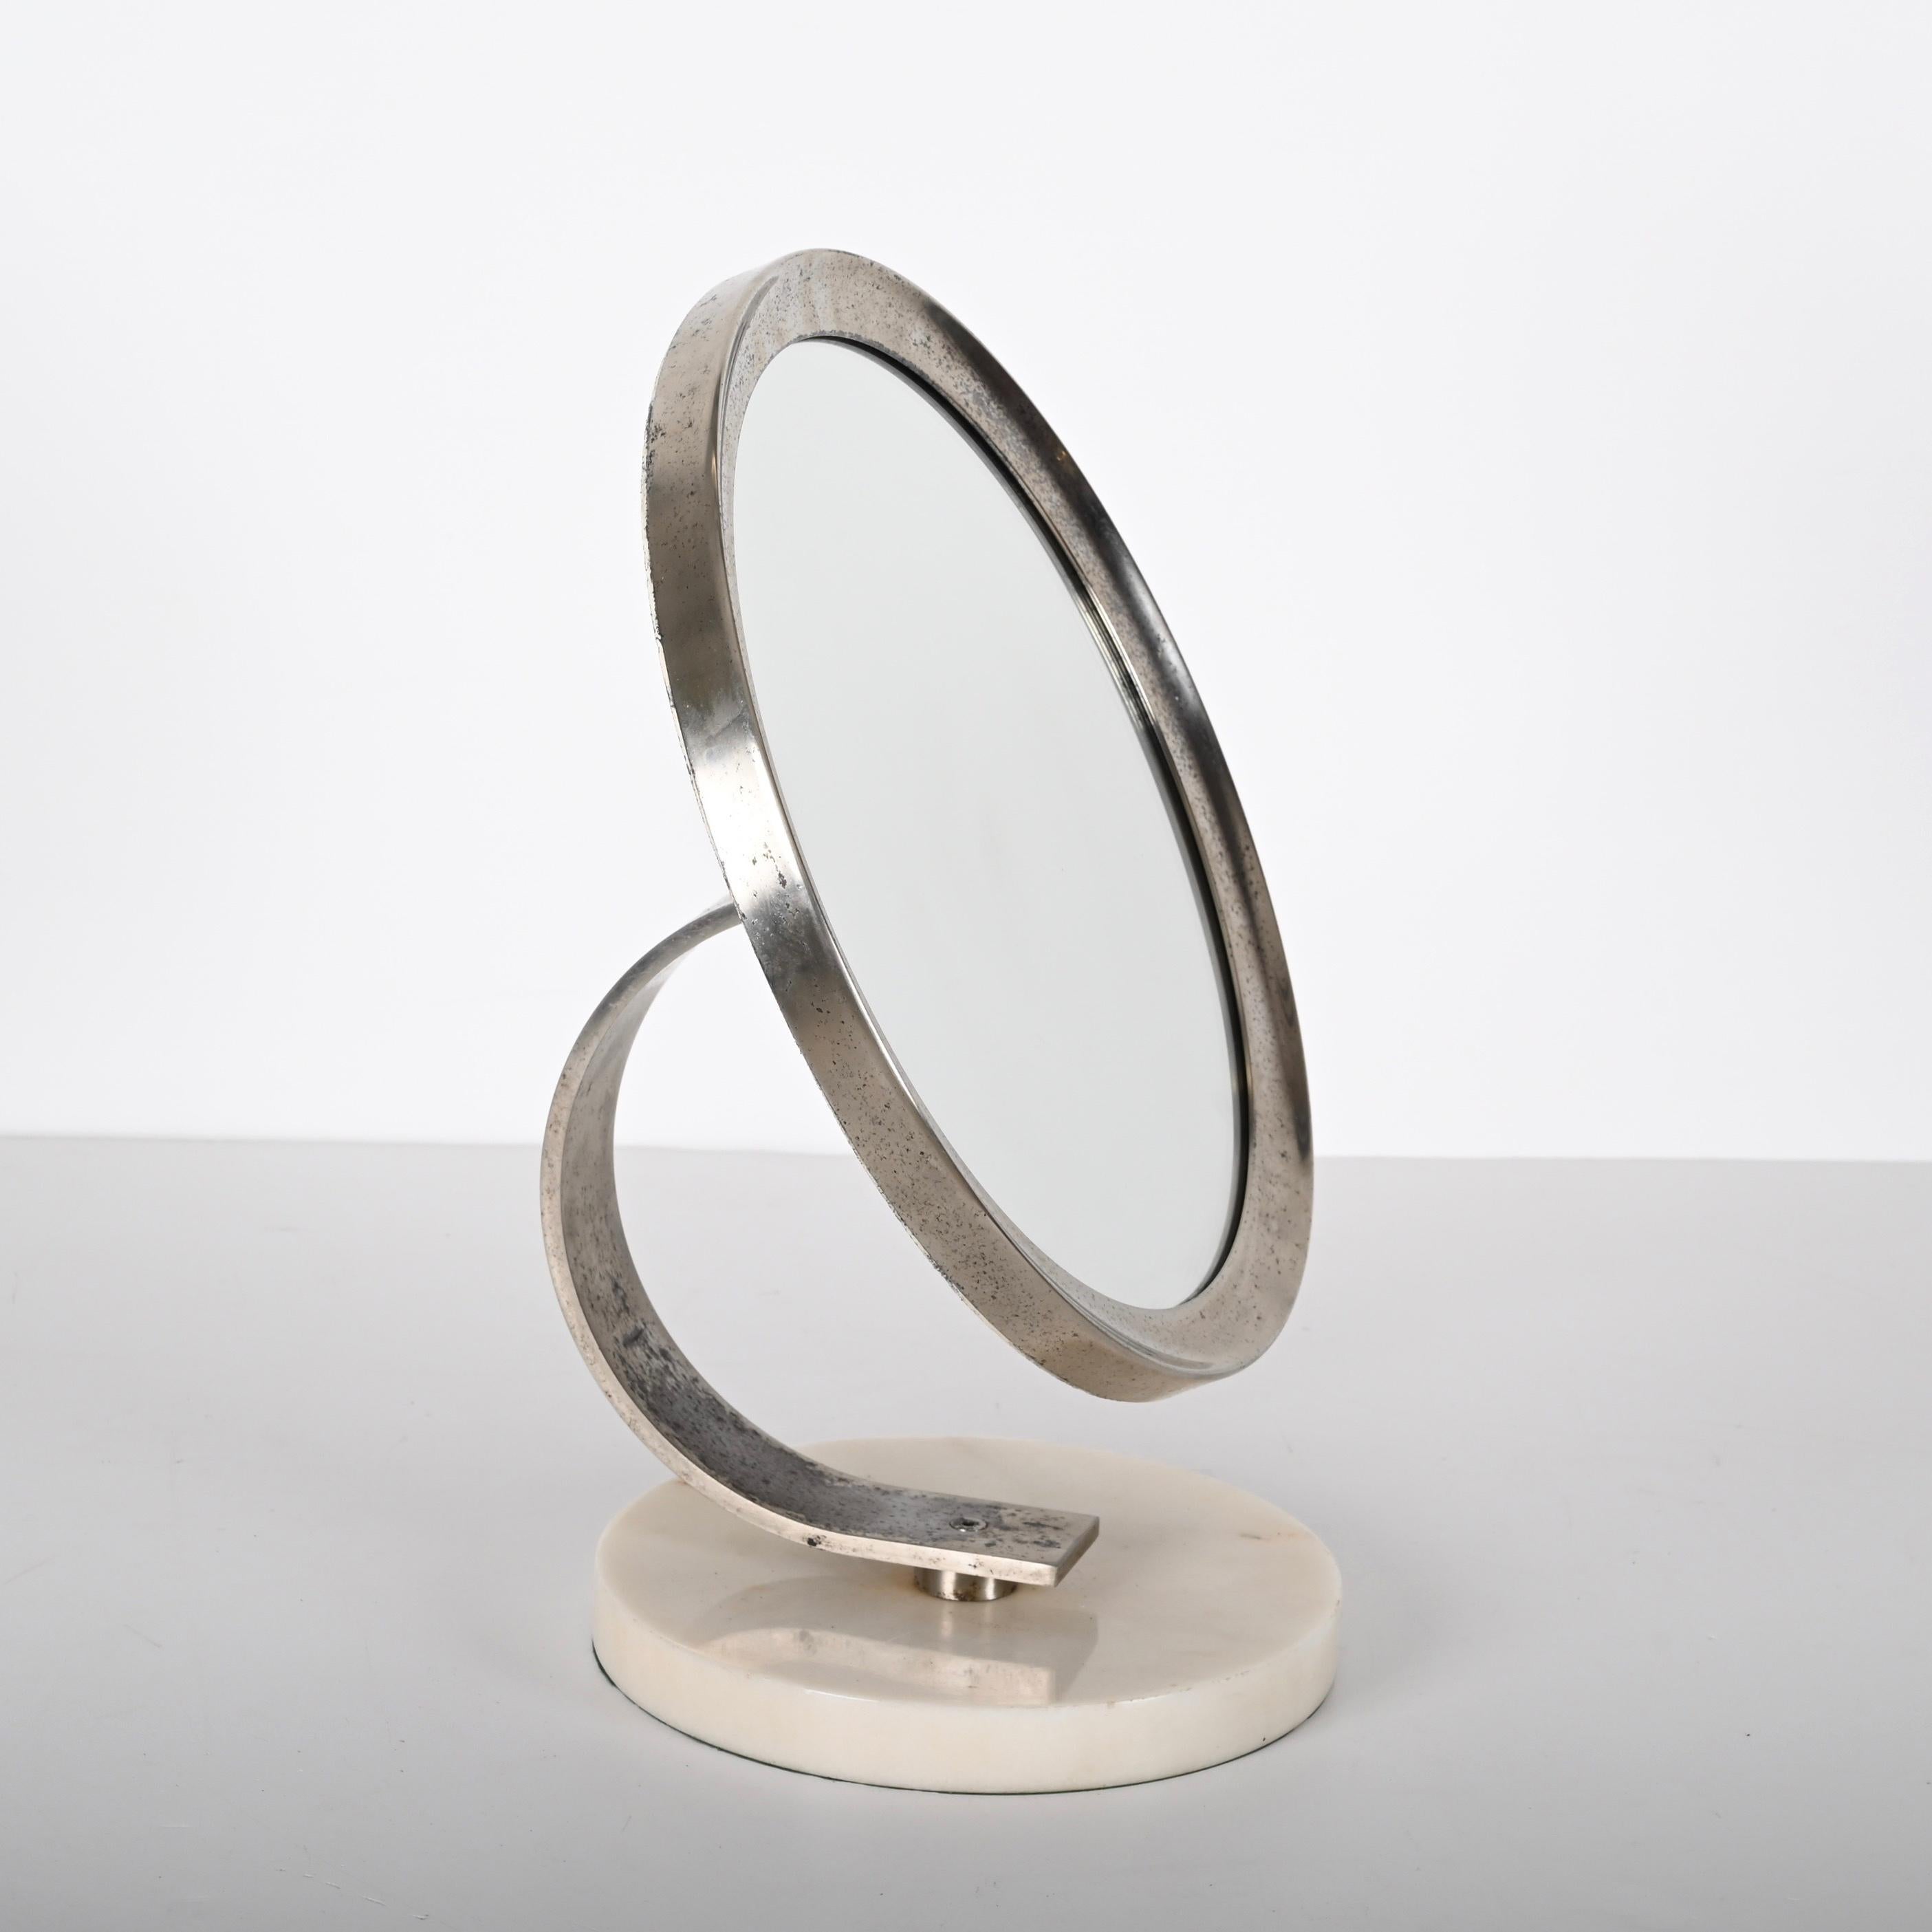 Unglaubliche Mitte des Jahrhunderts weißem Carrara-Marmor und Stahl runden Schminktisch Spiegel. Dieser fantastische Artikel wurde in den 1960er Jahren in Italien entworfen.

Es handelt sich um einen schönen Frisiertischspiegel mit einem runden